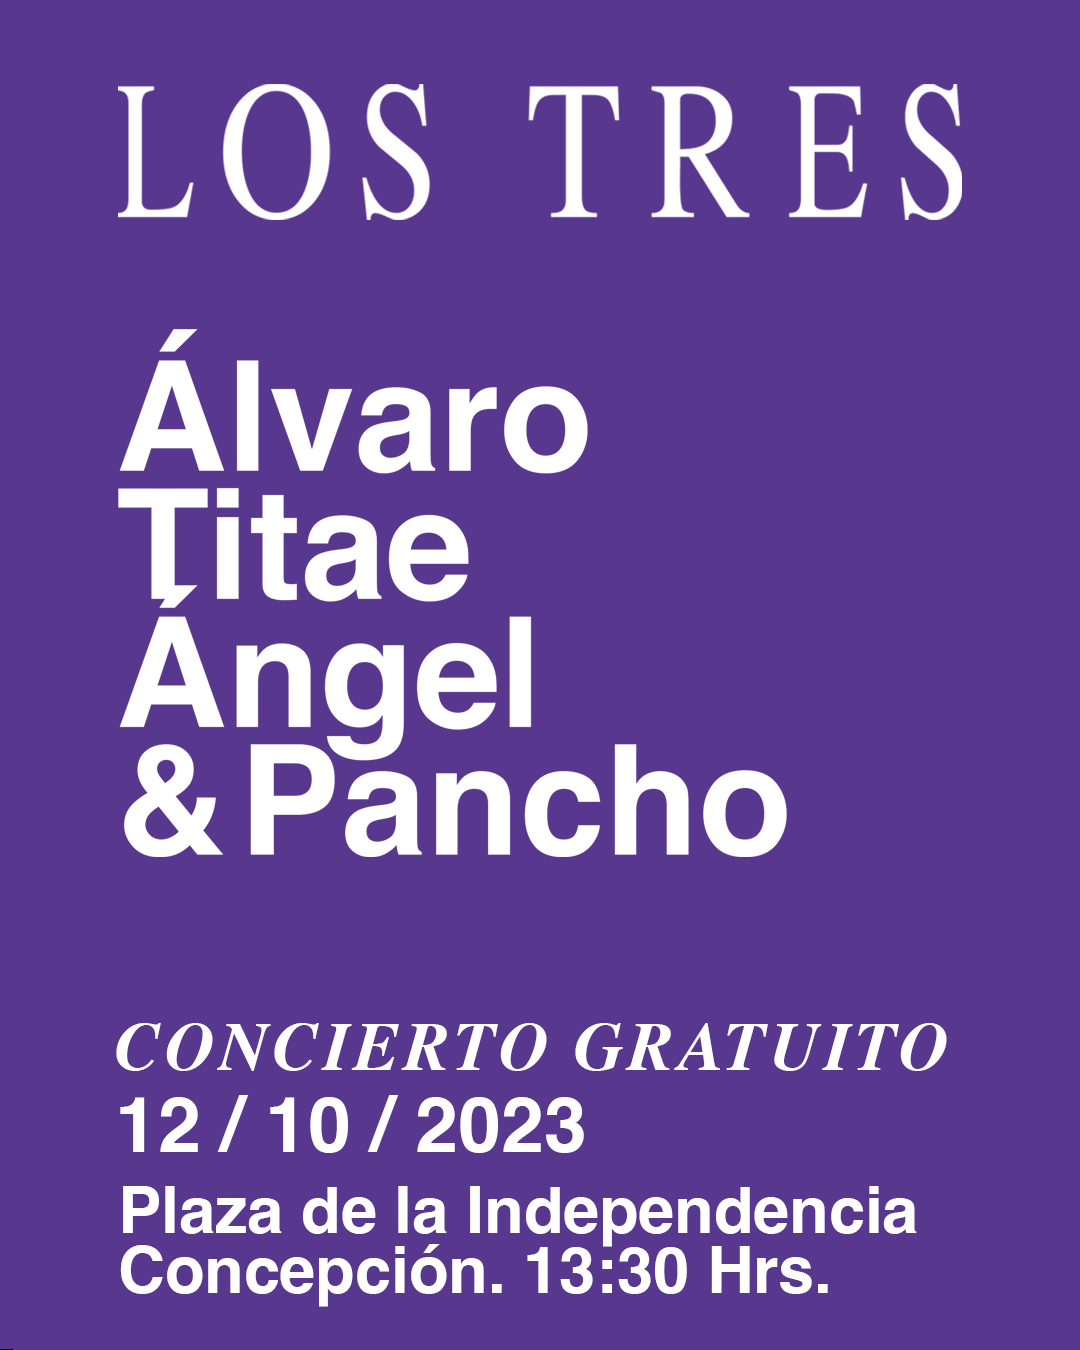 Show gratuito en Concepción de Los Tres